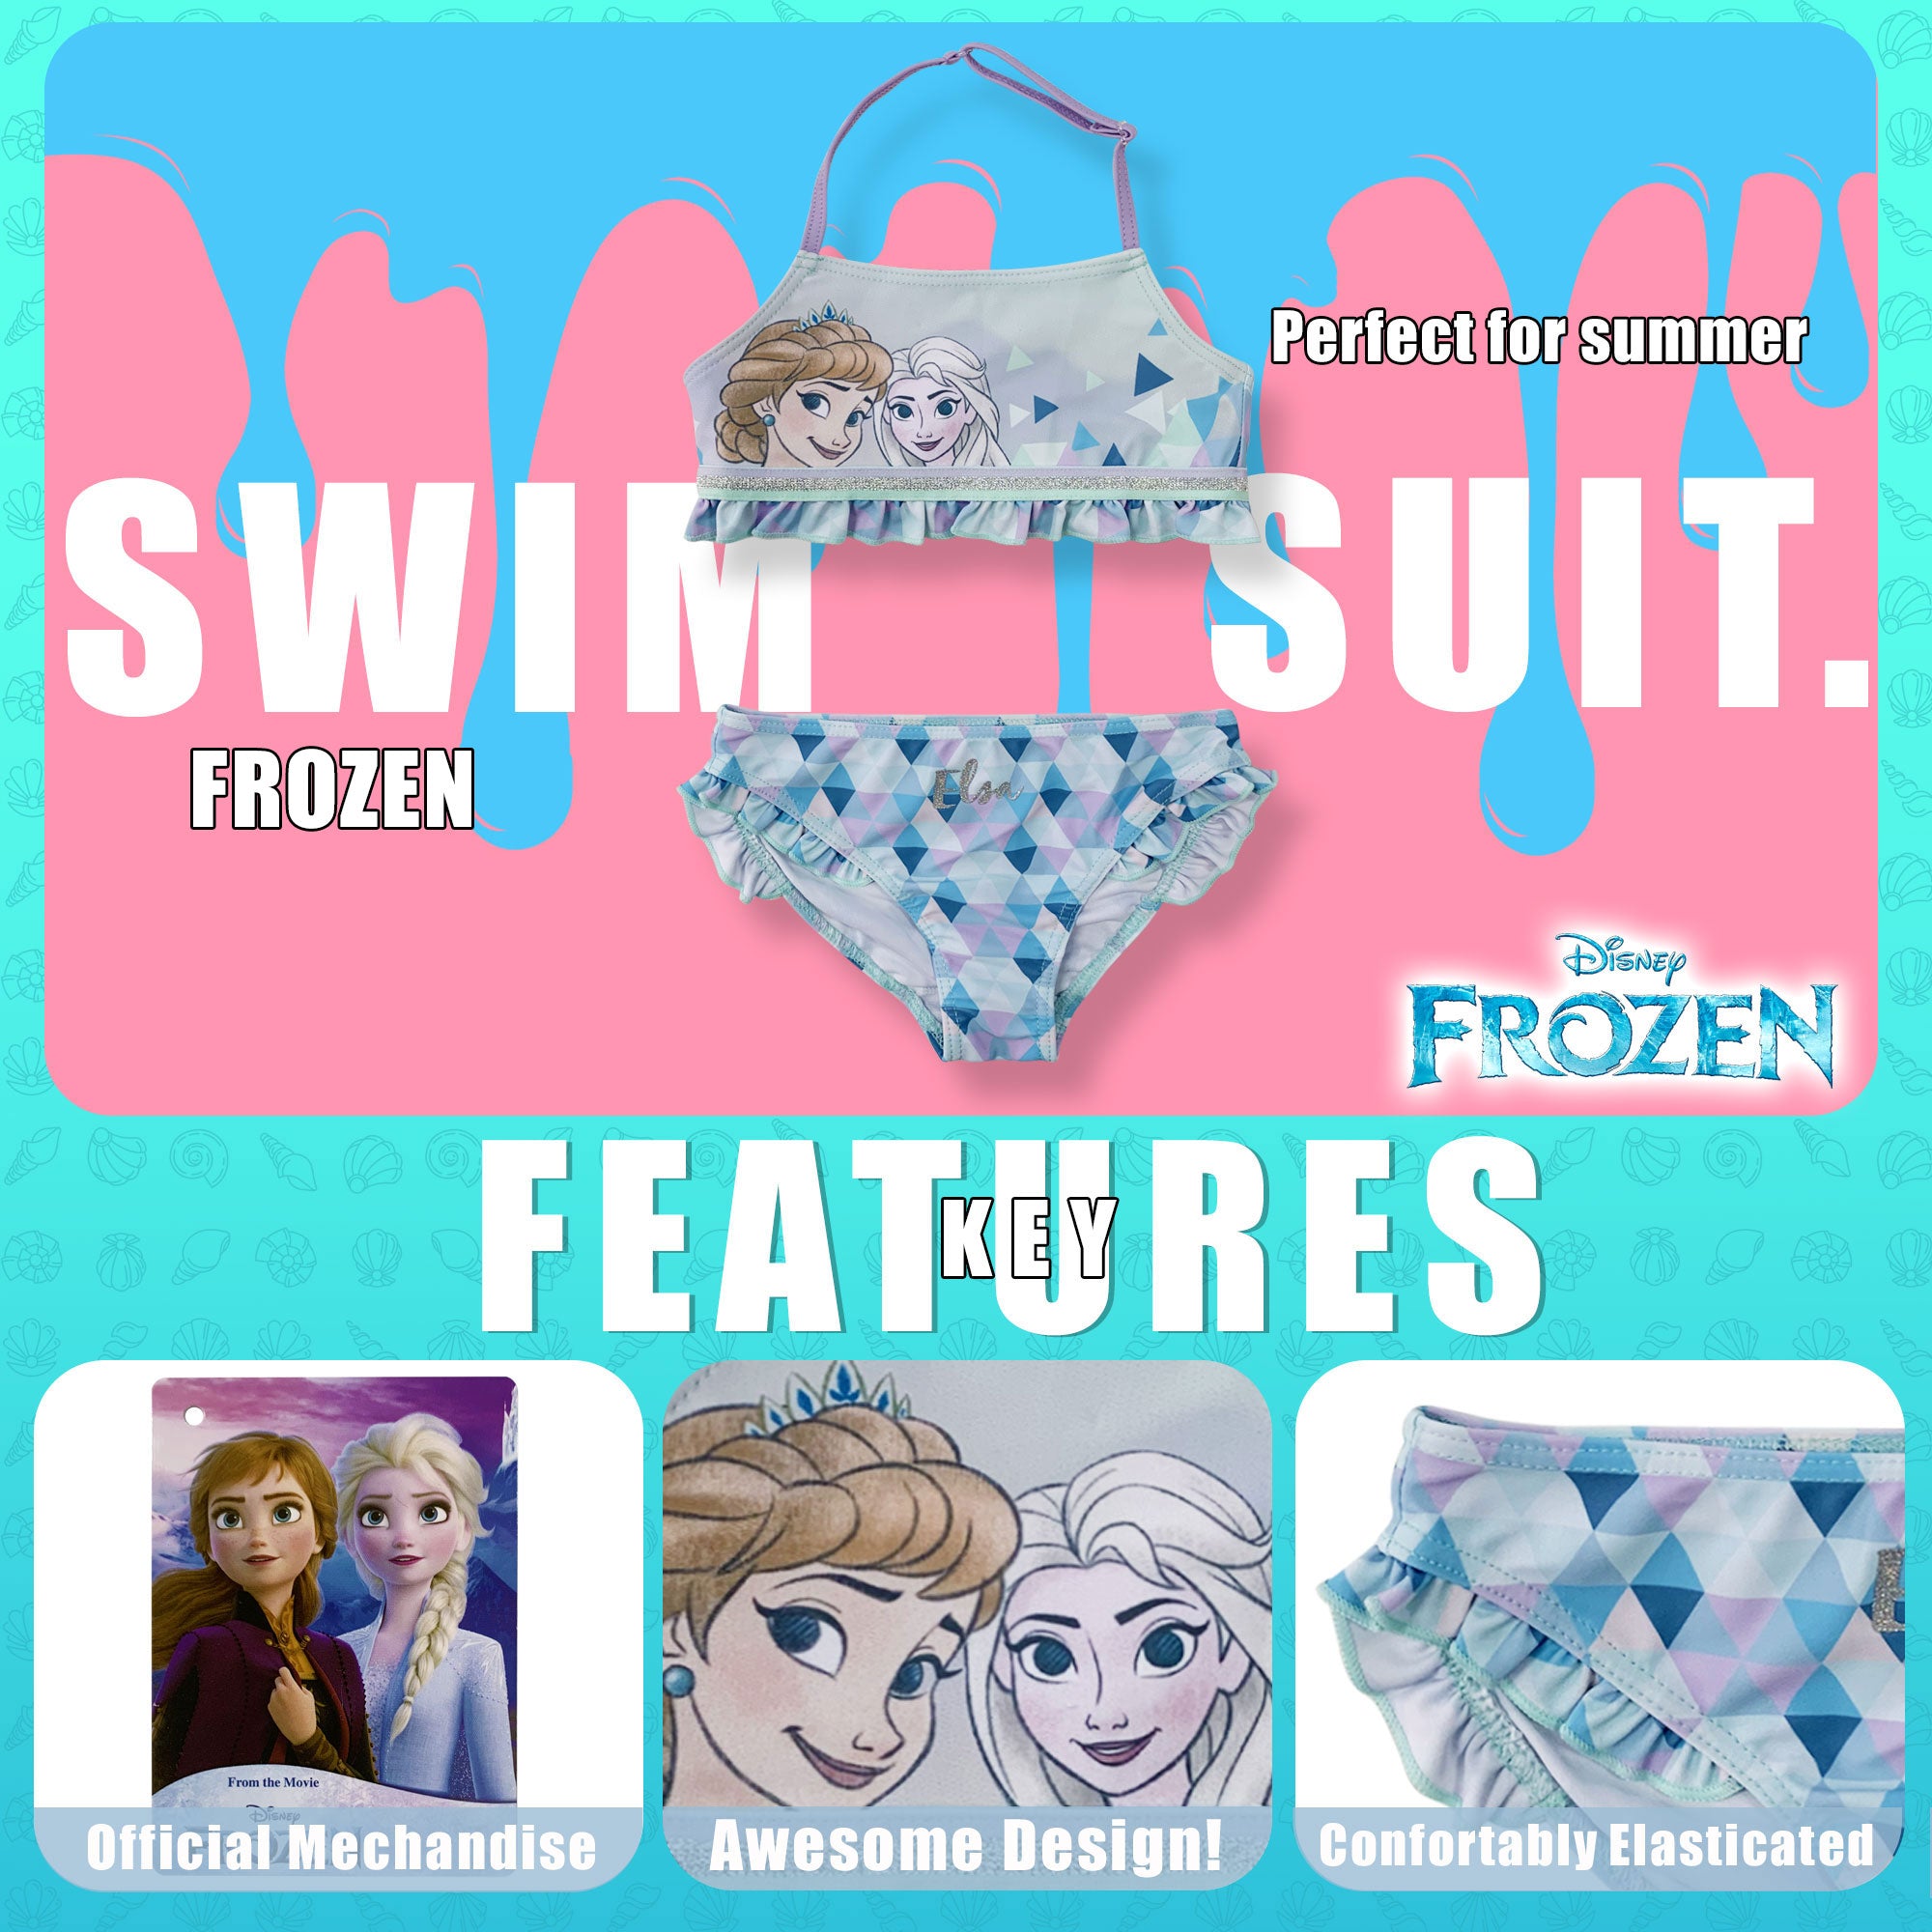 Costume da bagno bambina Disney Frozen Elsa e Anna due pezzi bikini mare 6156